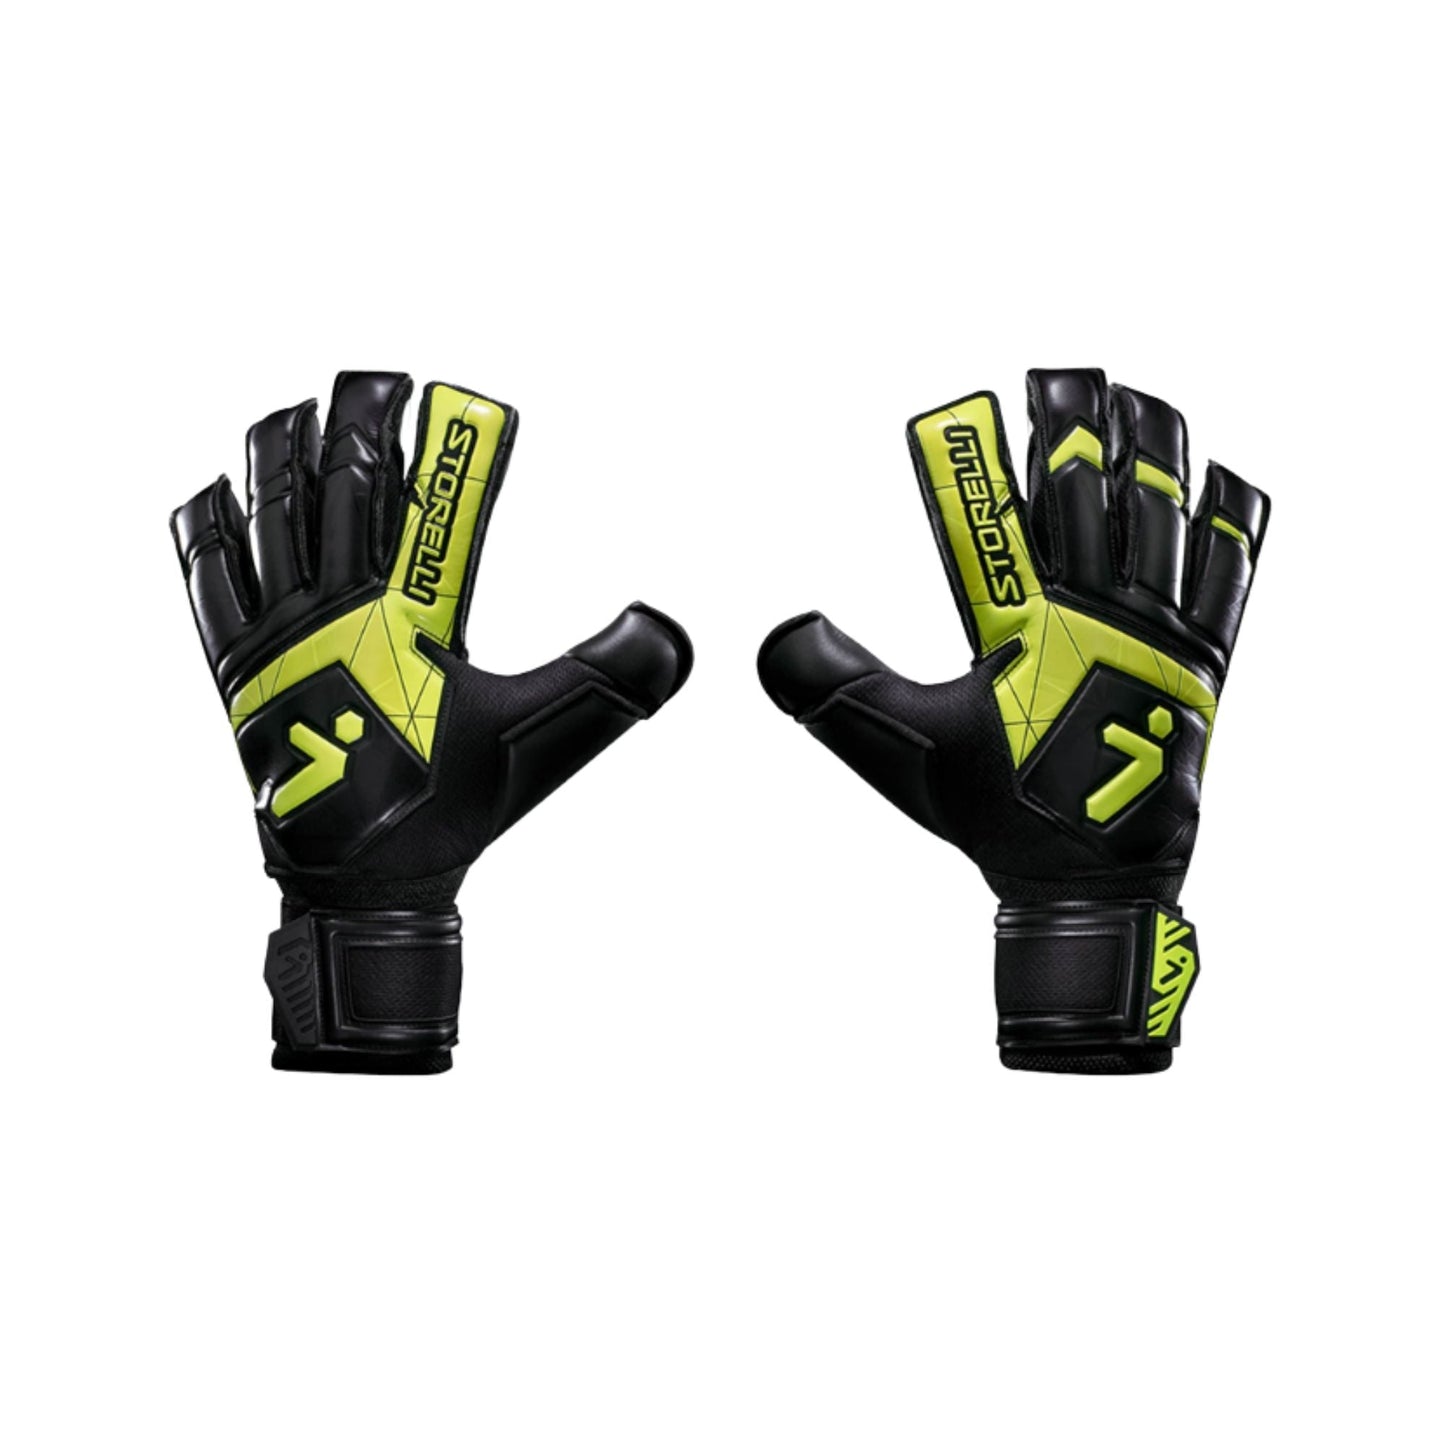 Goalkeeper Gloves - Gladiator Challenger v3 by Storelli Goalkeeper gloves ITASPORT 